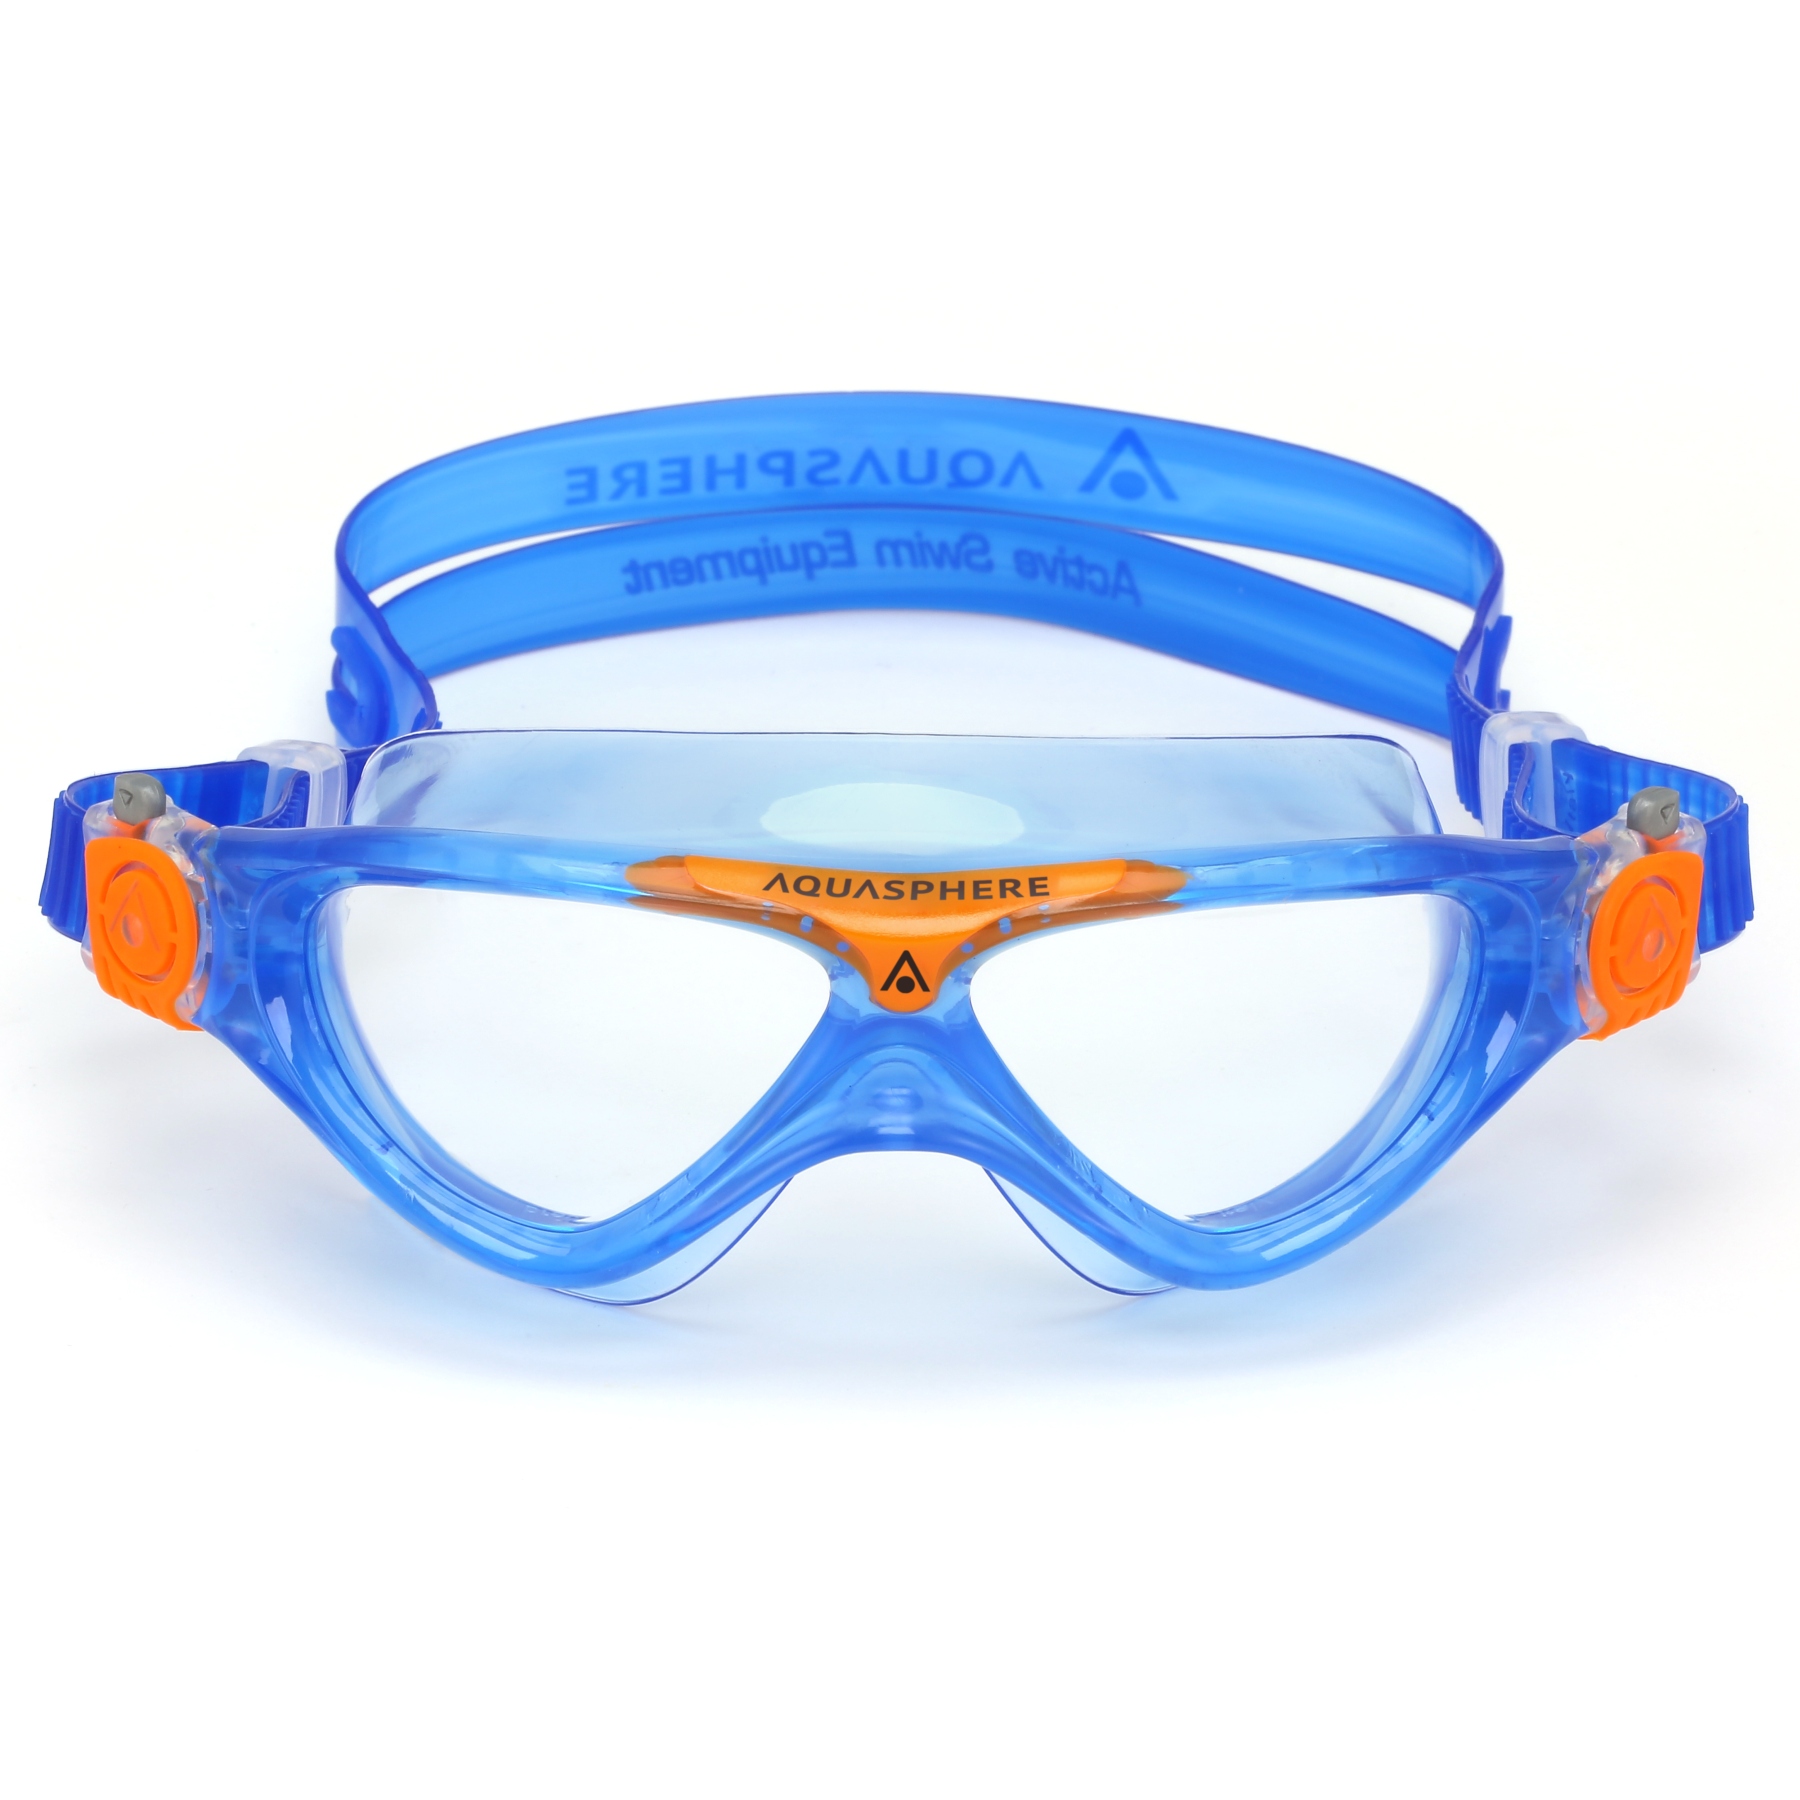 Produktbild von AQUASPHERE Vista Junior Kinder Schwimmbrille - Klar - Blau/Orange